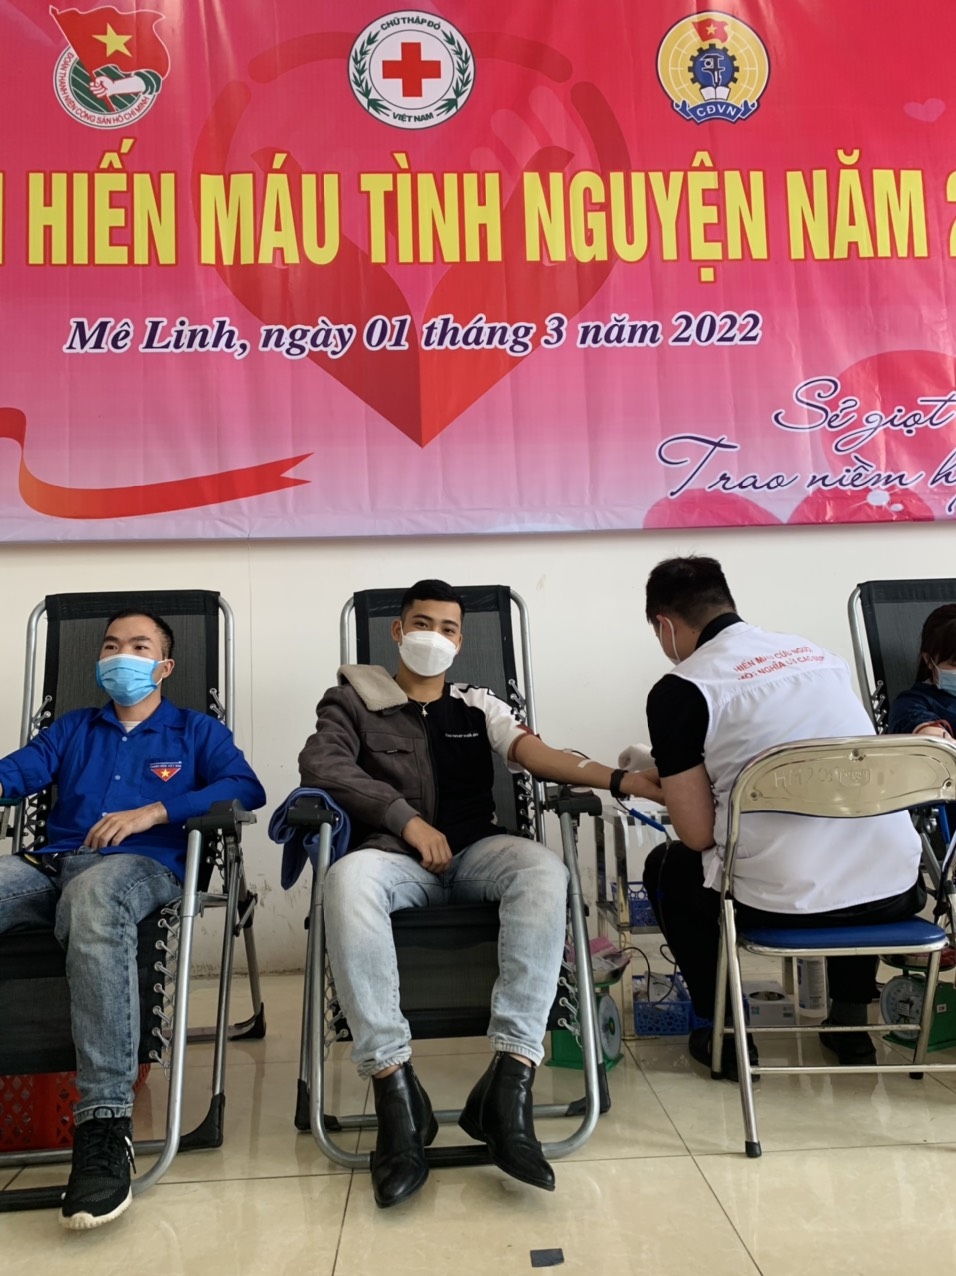 Sôi nổi ngày hội hiến máu tình nguyện huyện Mê Linh năm 2022